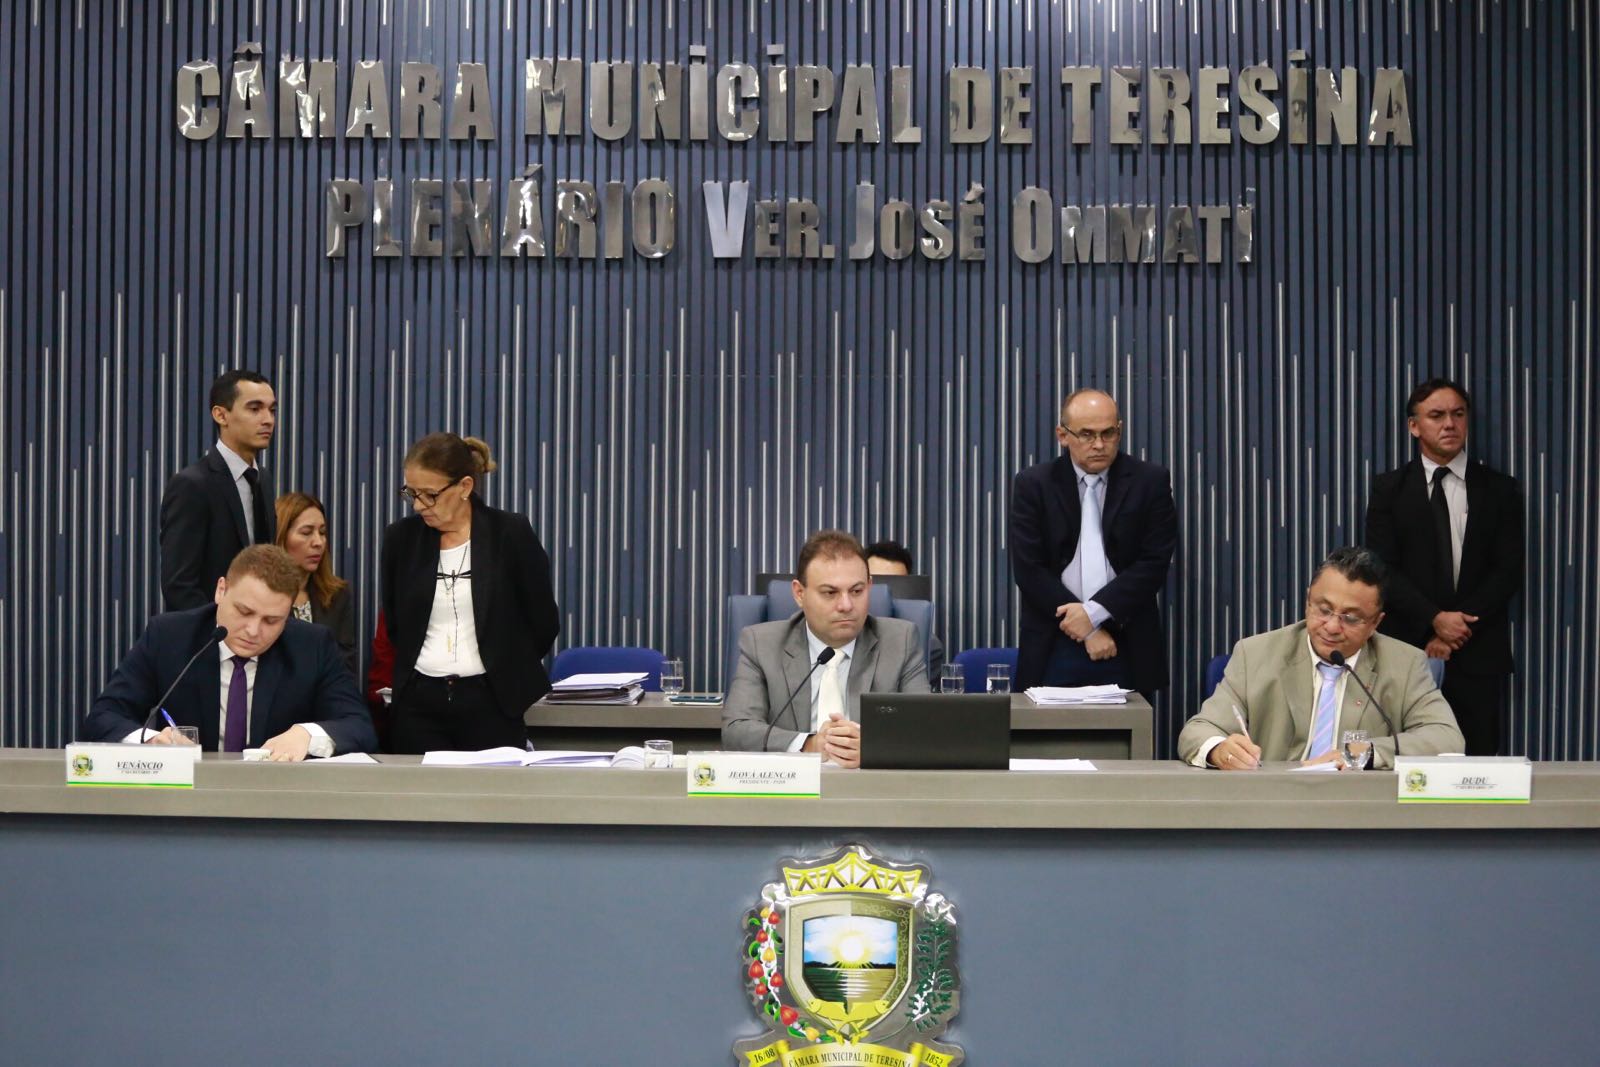 Sessão na Câmara Municipal de Teresina